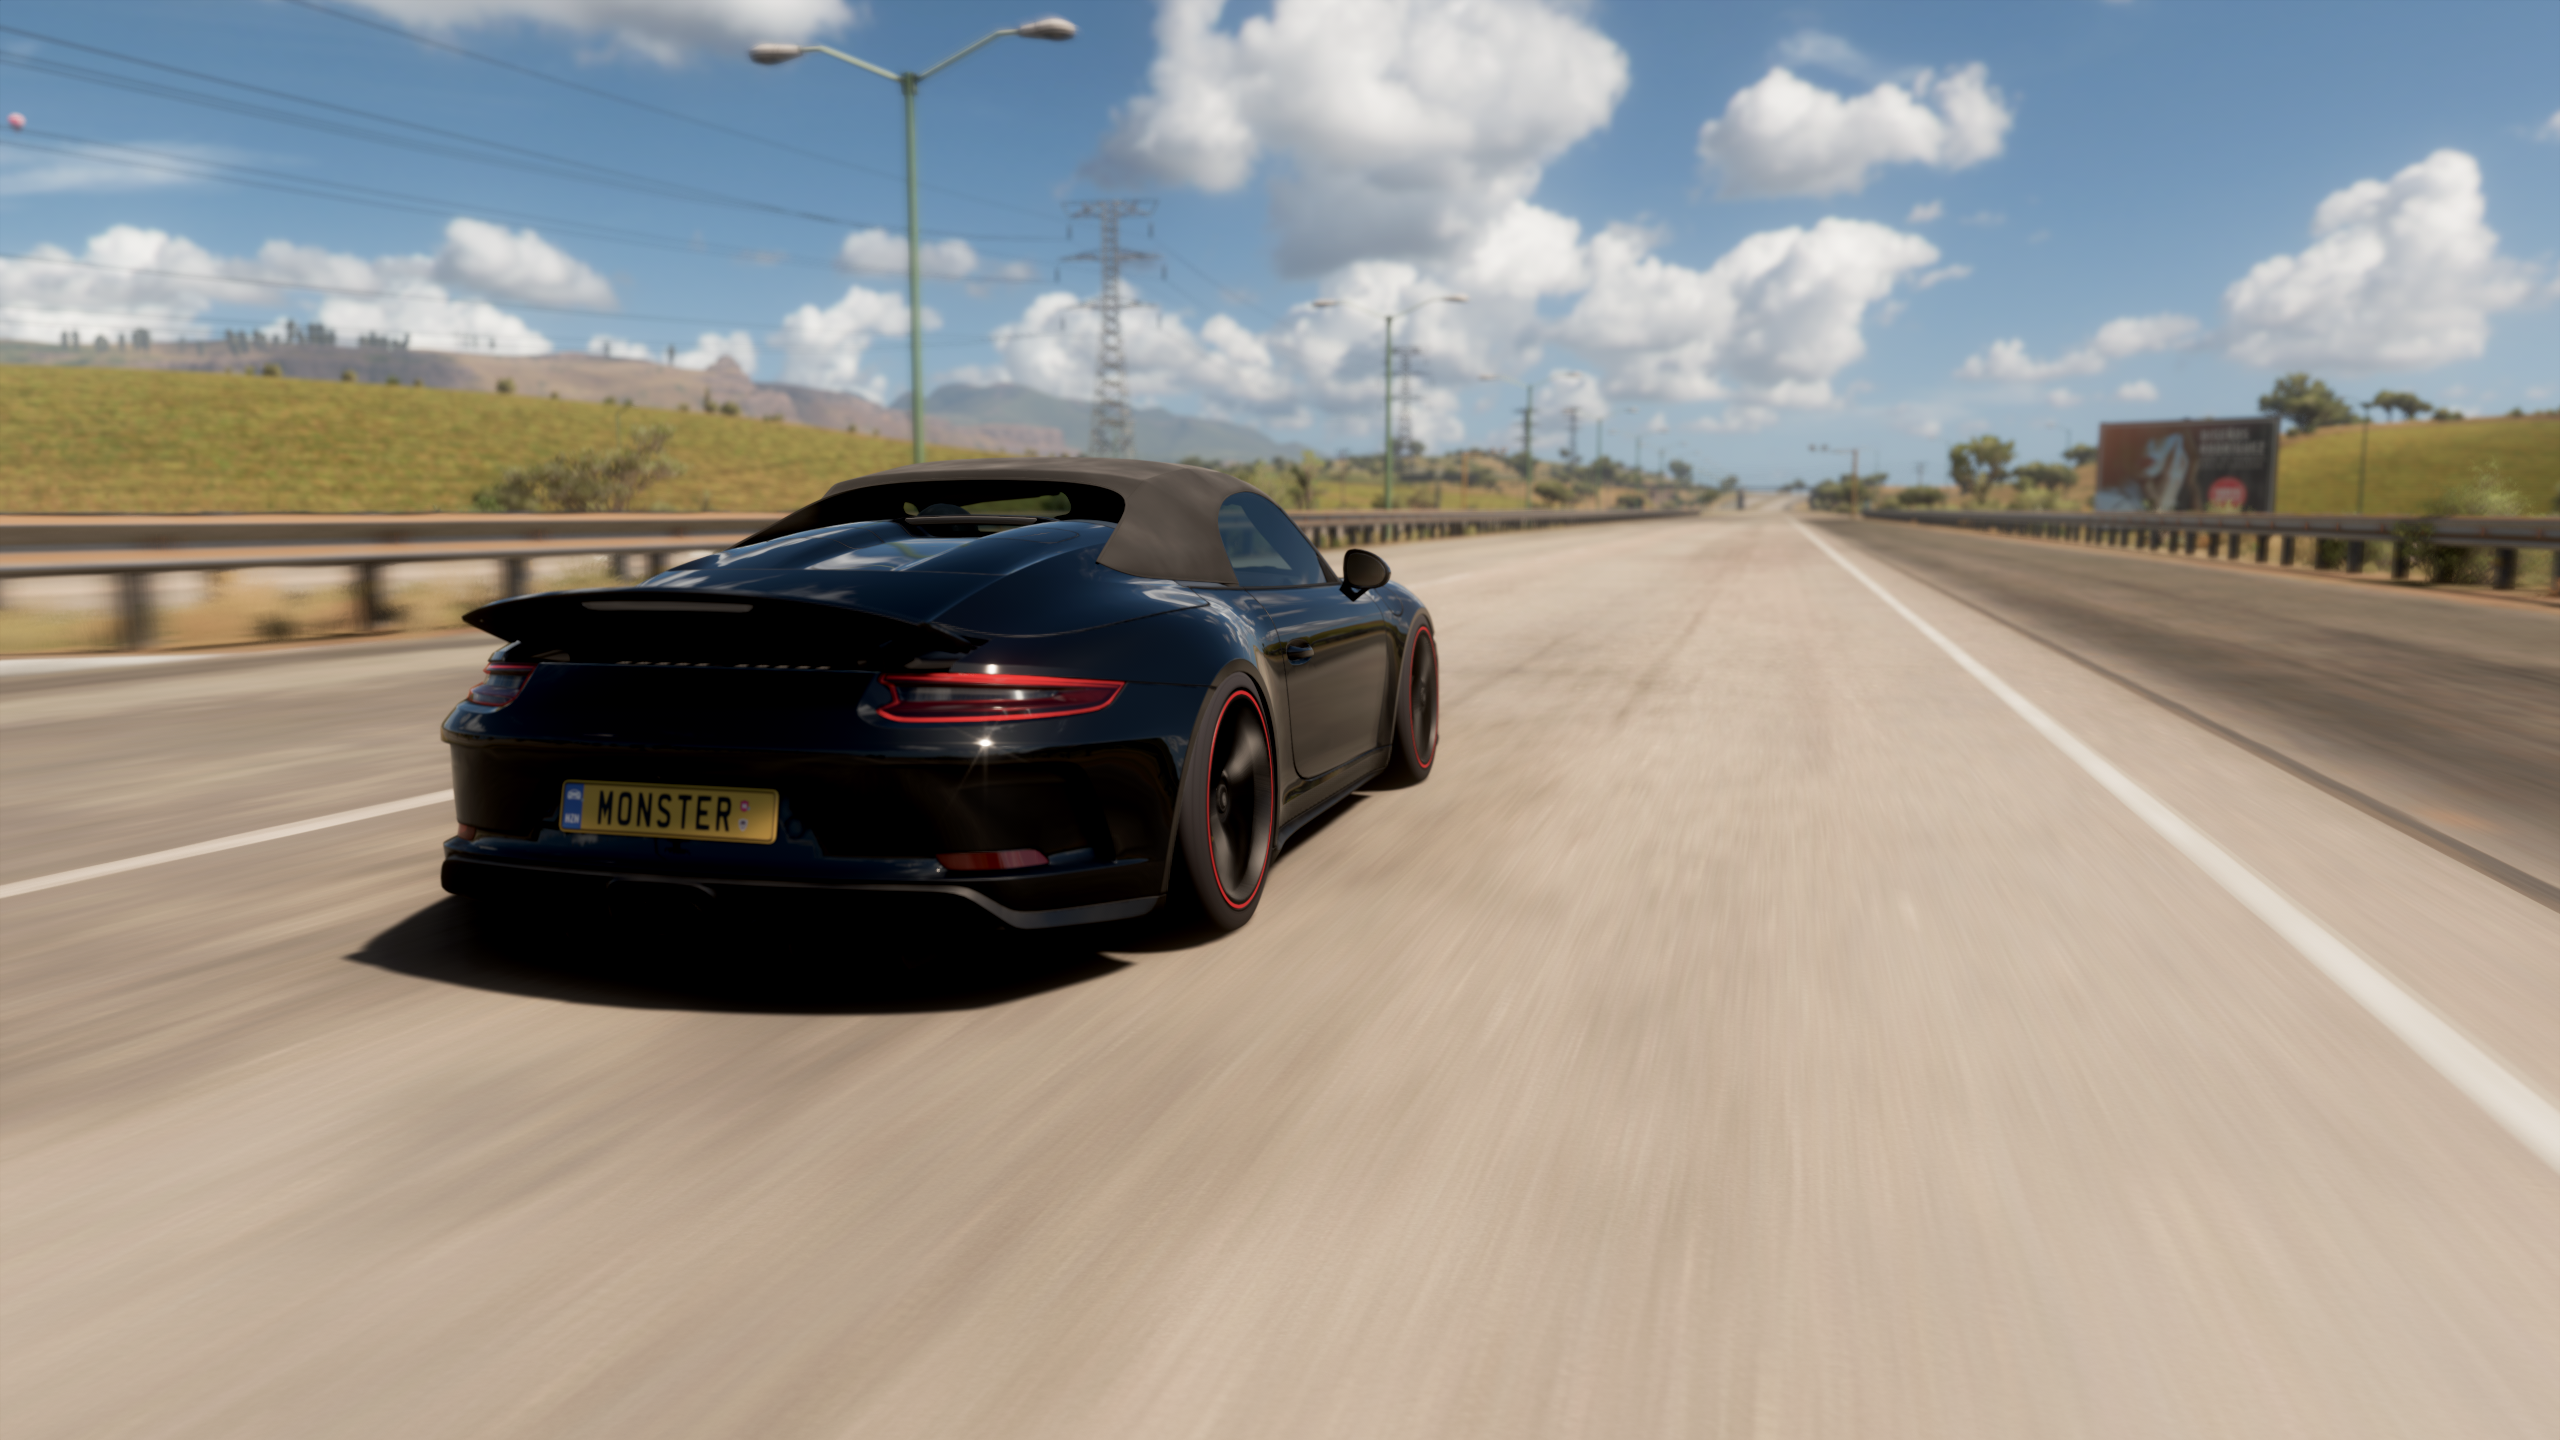 General 2560x1440 Forza Horizon 5 Porsche Porsche 911 car video games